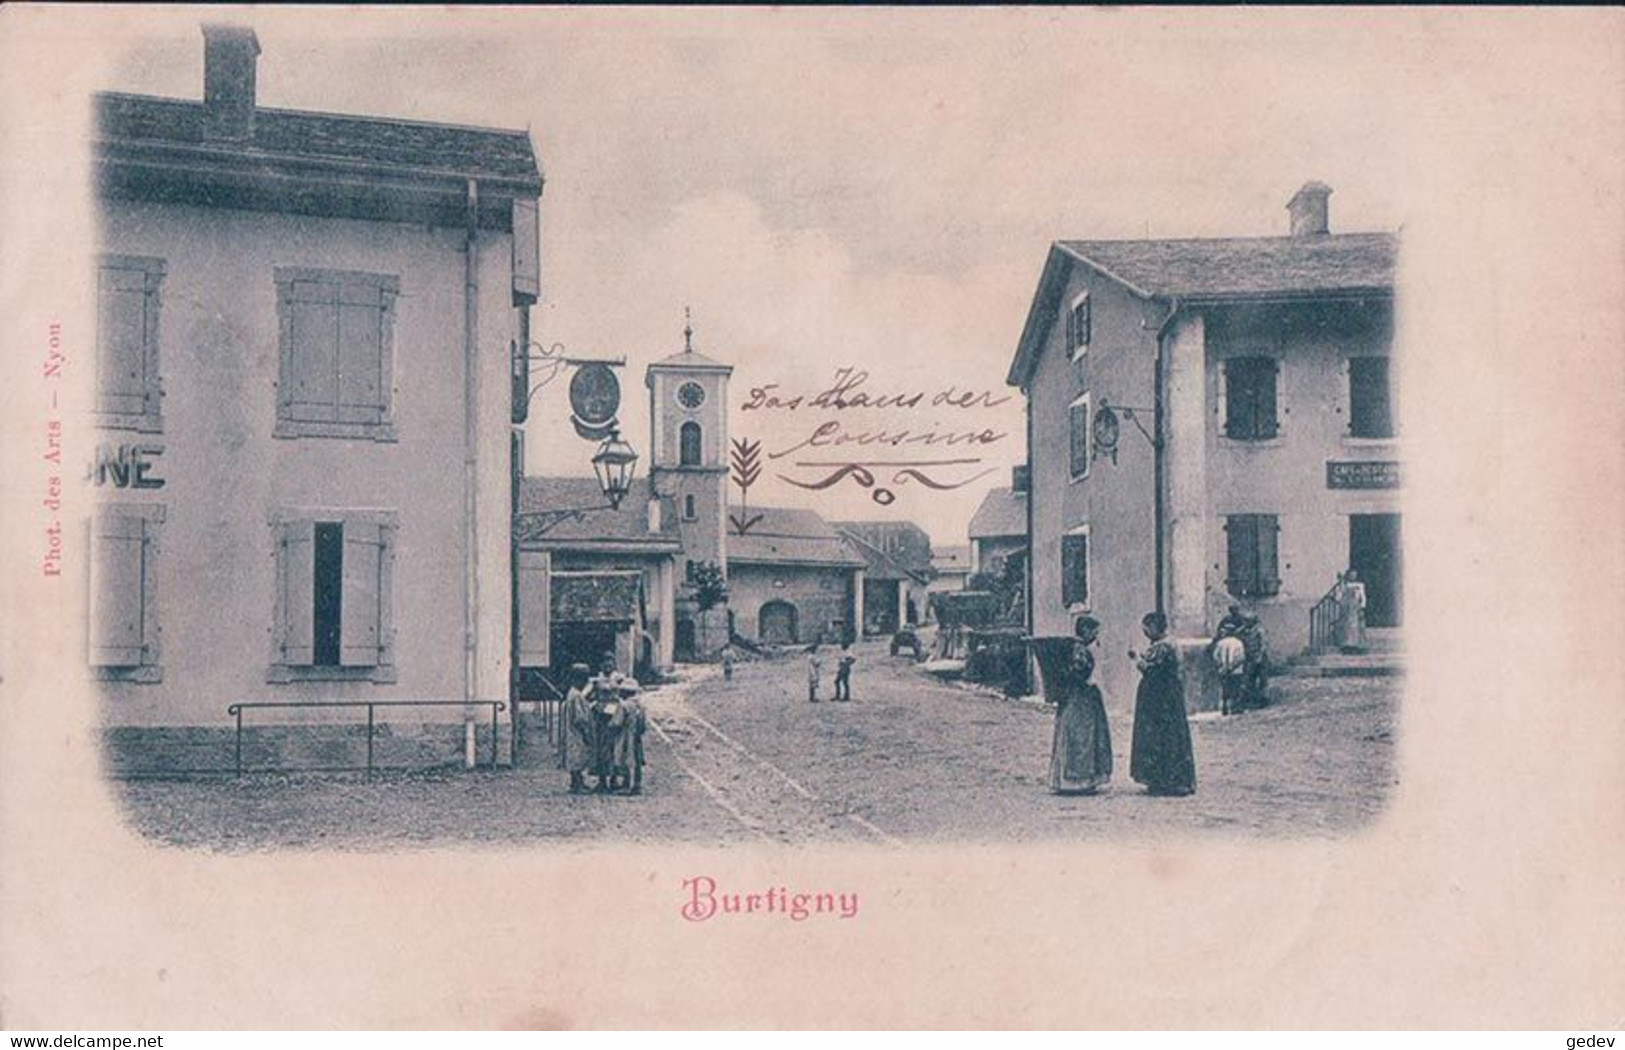 Burtigny VD, Café Restaurant, Rue Animée (2.4.1900) - Burtigny